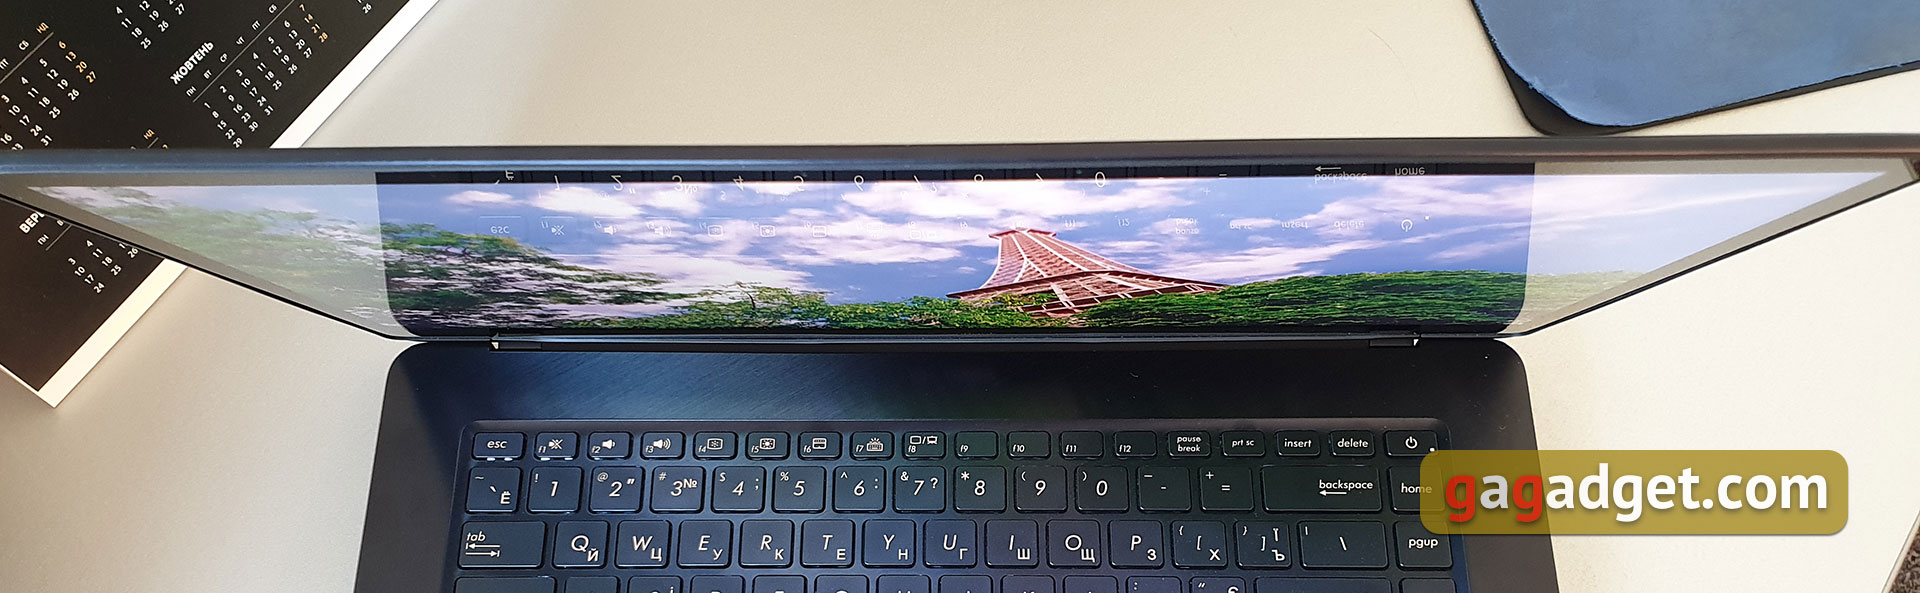 Обзор ASUS ZenBook Pro 15 UX580: новый Intel Core i9 и сенсорный экран вместо тачпада-53